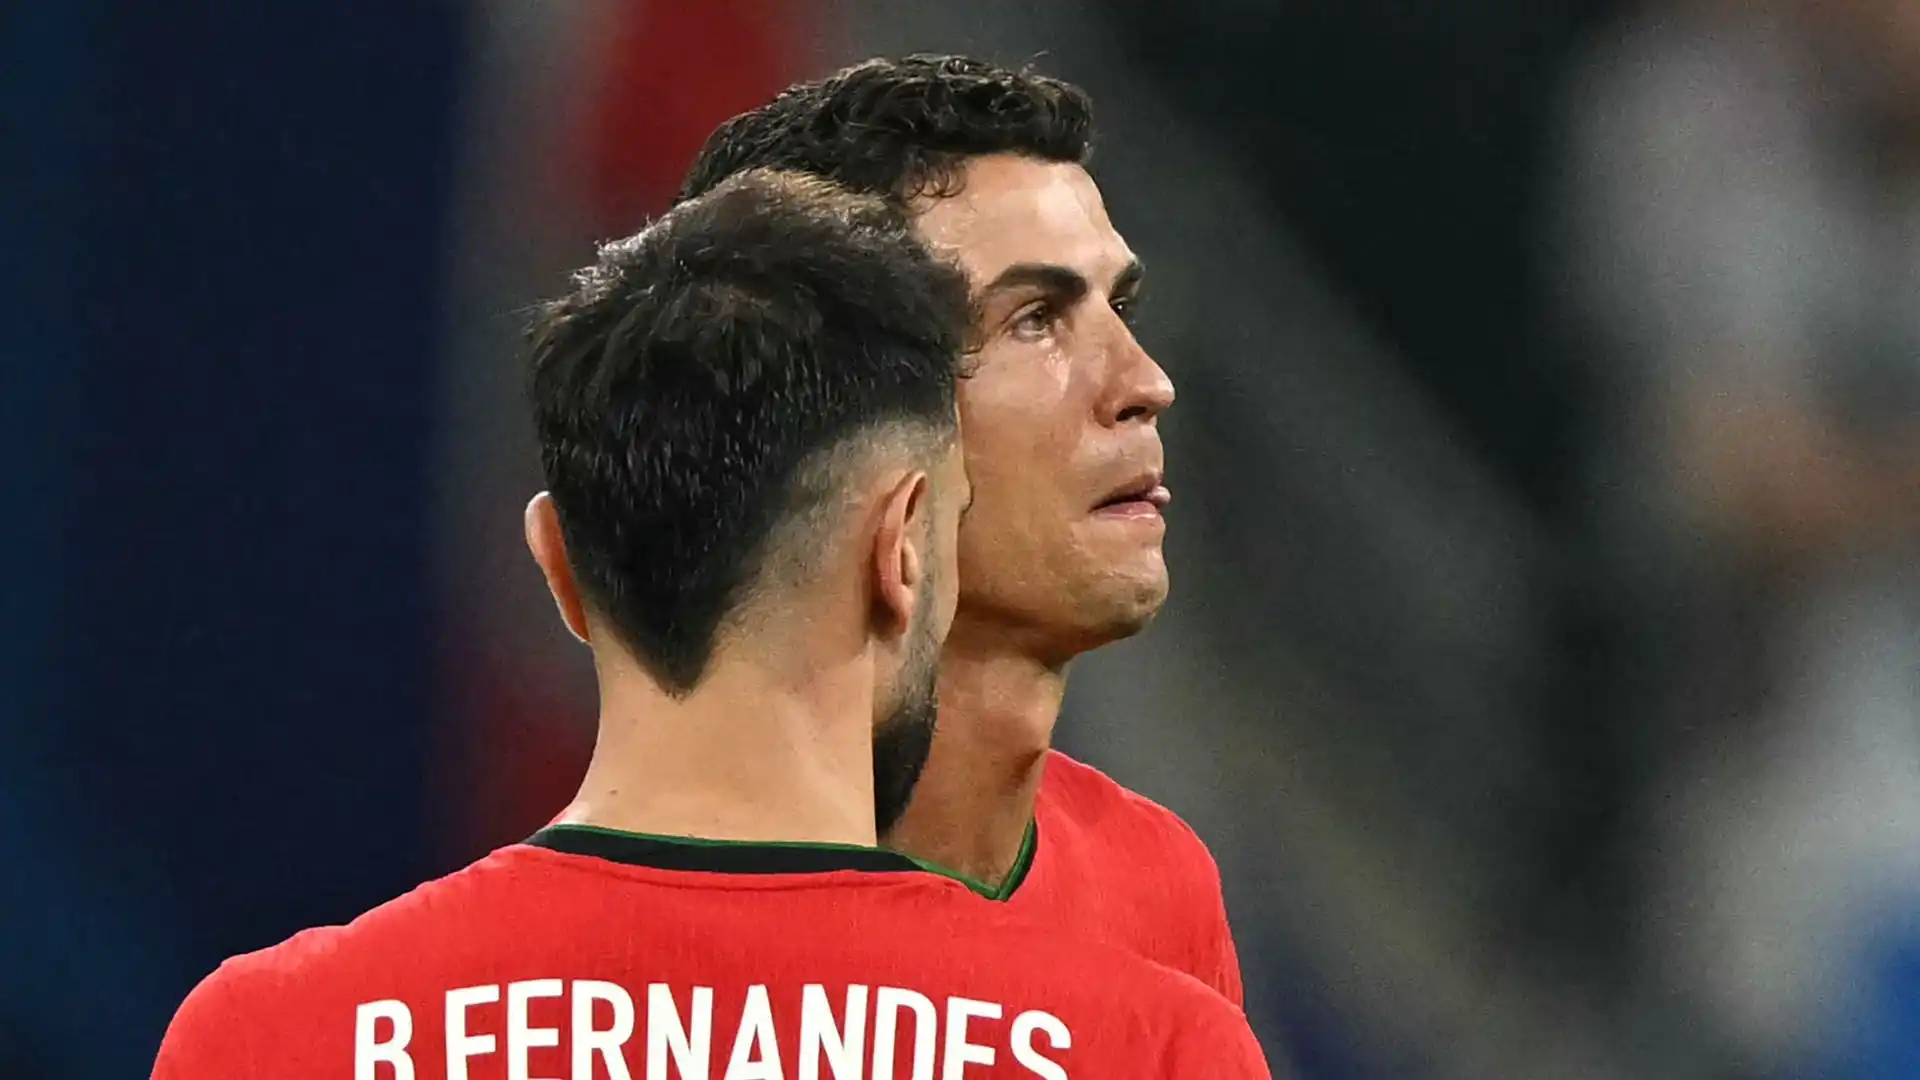 Uno dei momenti più difficili per la carriera di Ronaldo